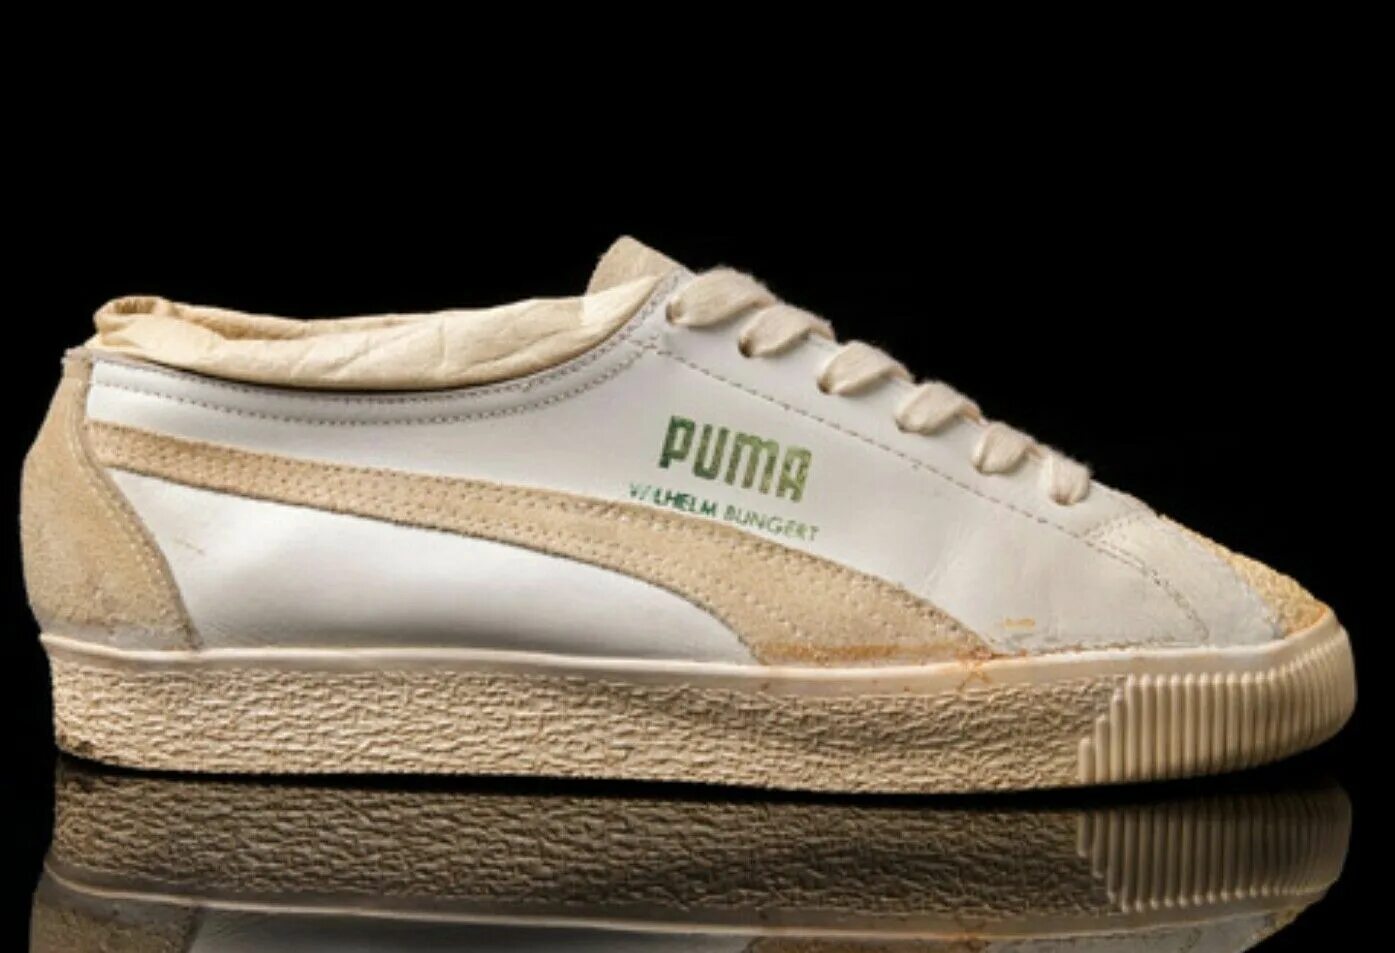 Vintage Tennis Puma Shoes. Wilhelm Bungert адидас. Puma Vintage Sneakers. Зипка Пума Винтаж. Кроссовки адидас пума